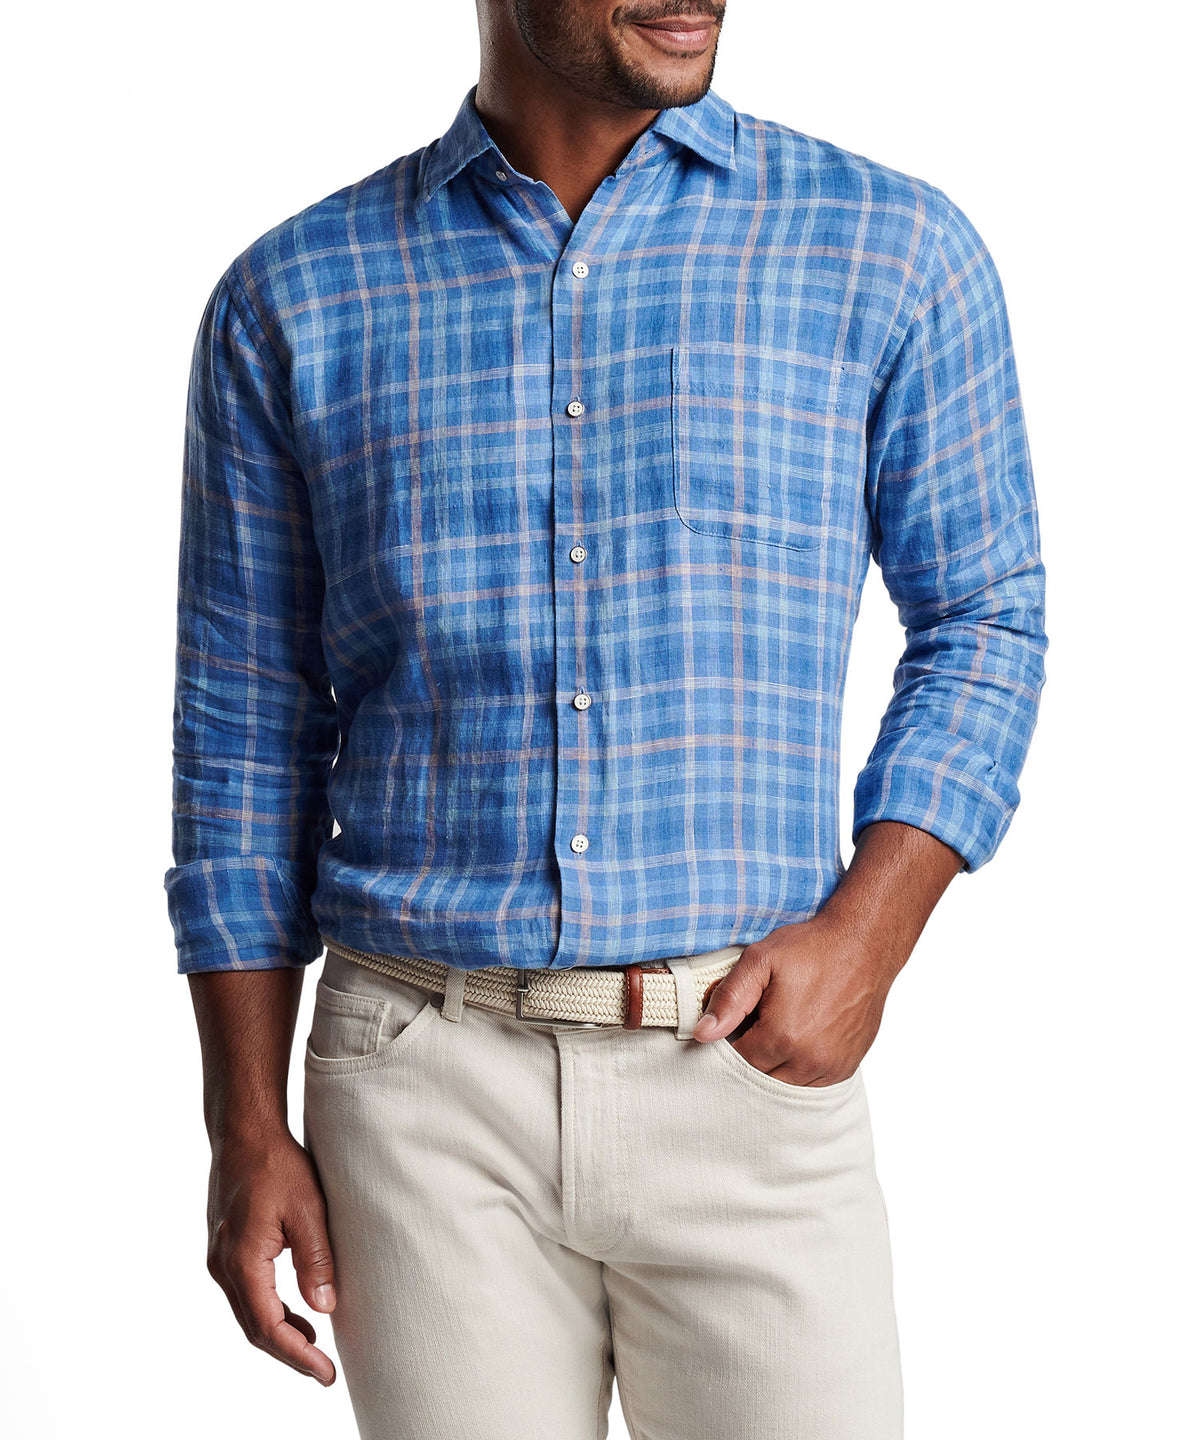 Peter Millar Long Sleeve 'Ashore' Linen Sport Shirt, Men's Big & Tall